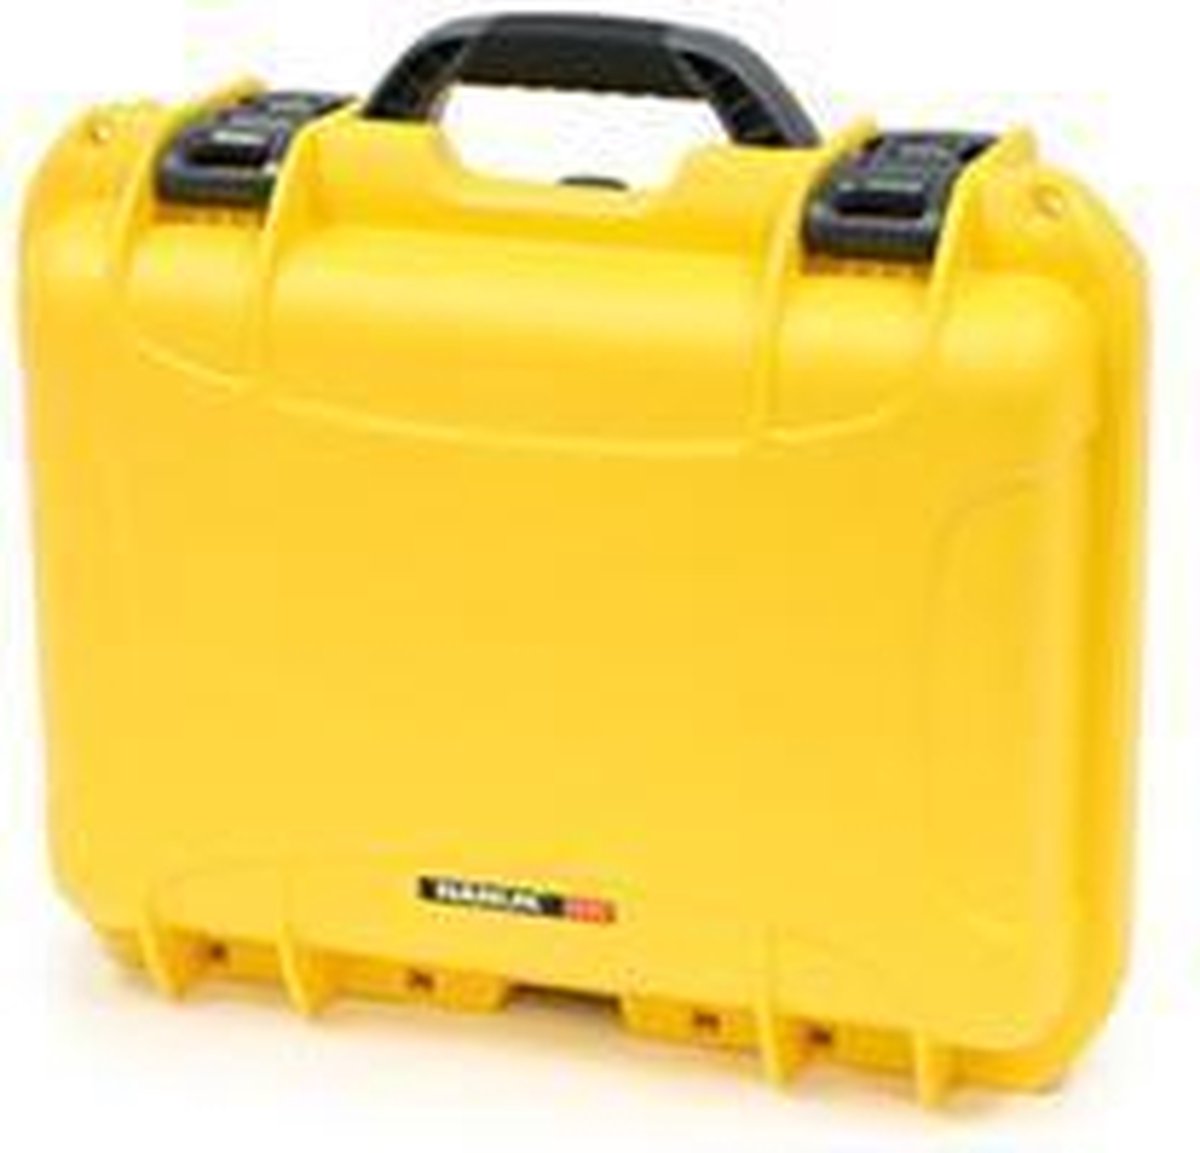 Nanuk 925 Case - Yellow